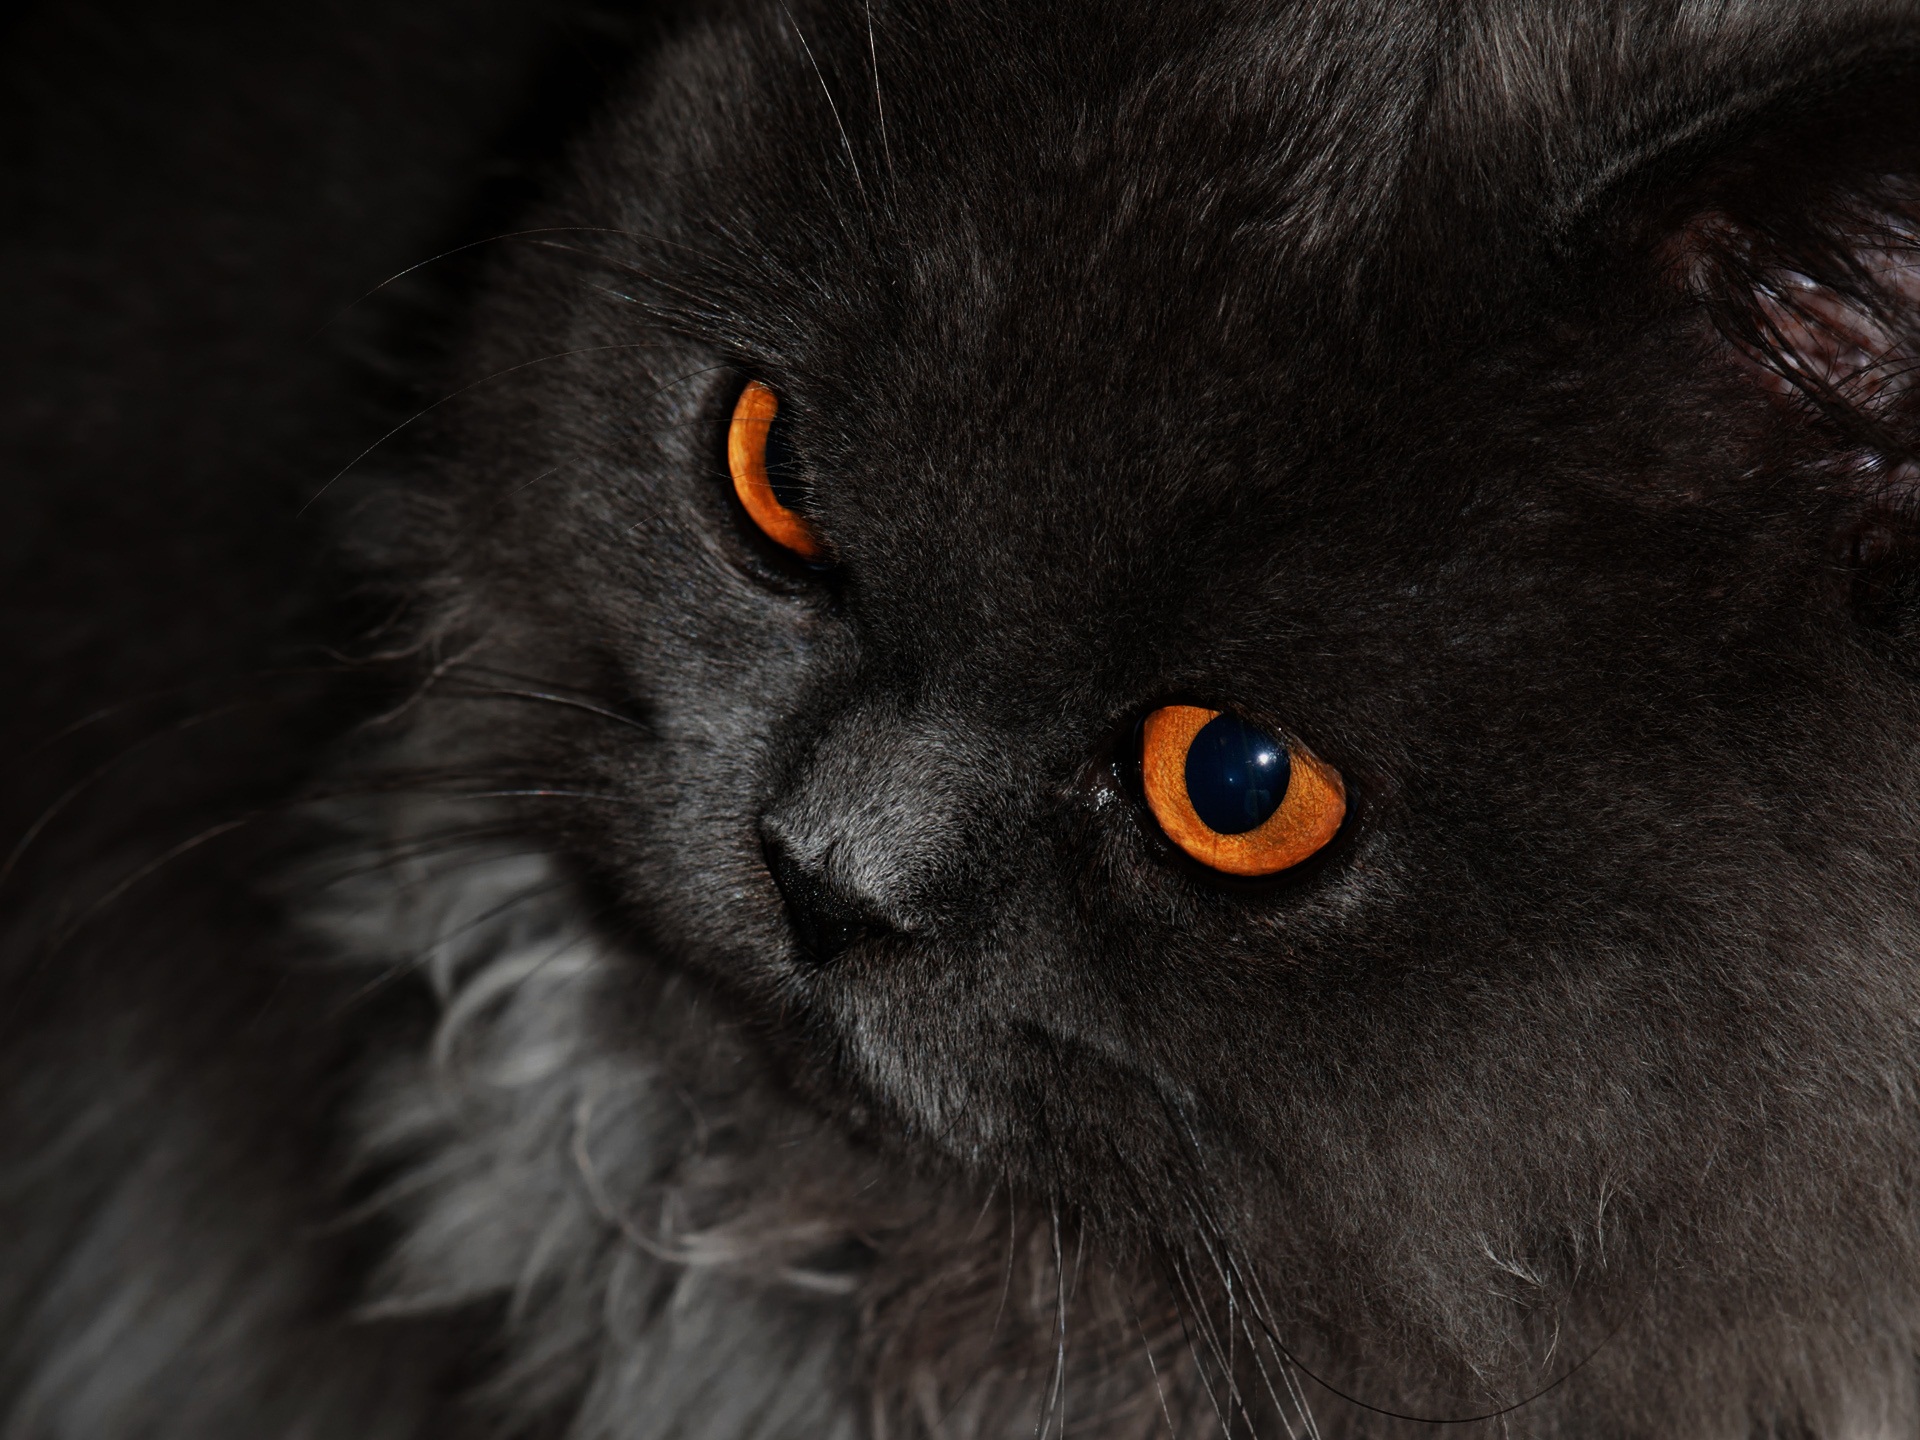 Black Cat With Orange Eyes